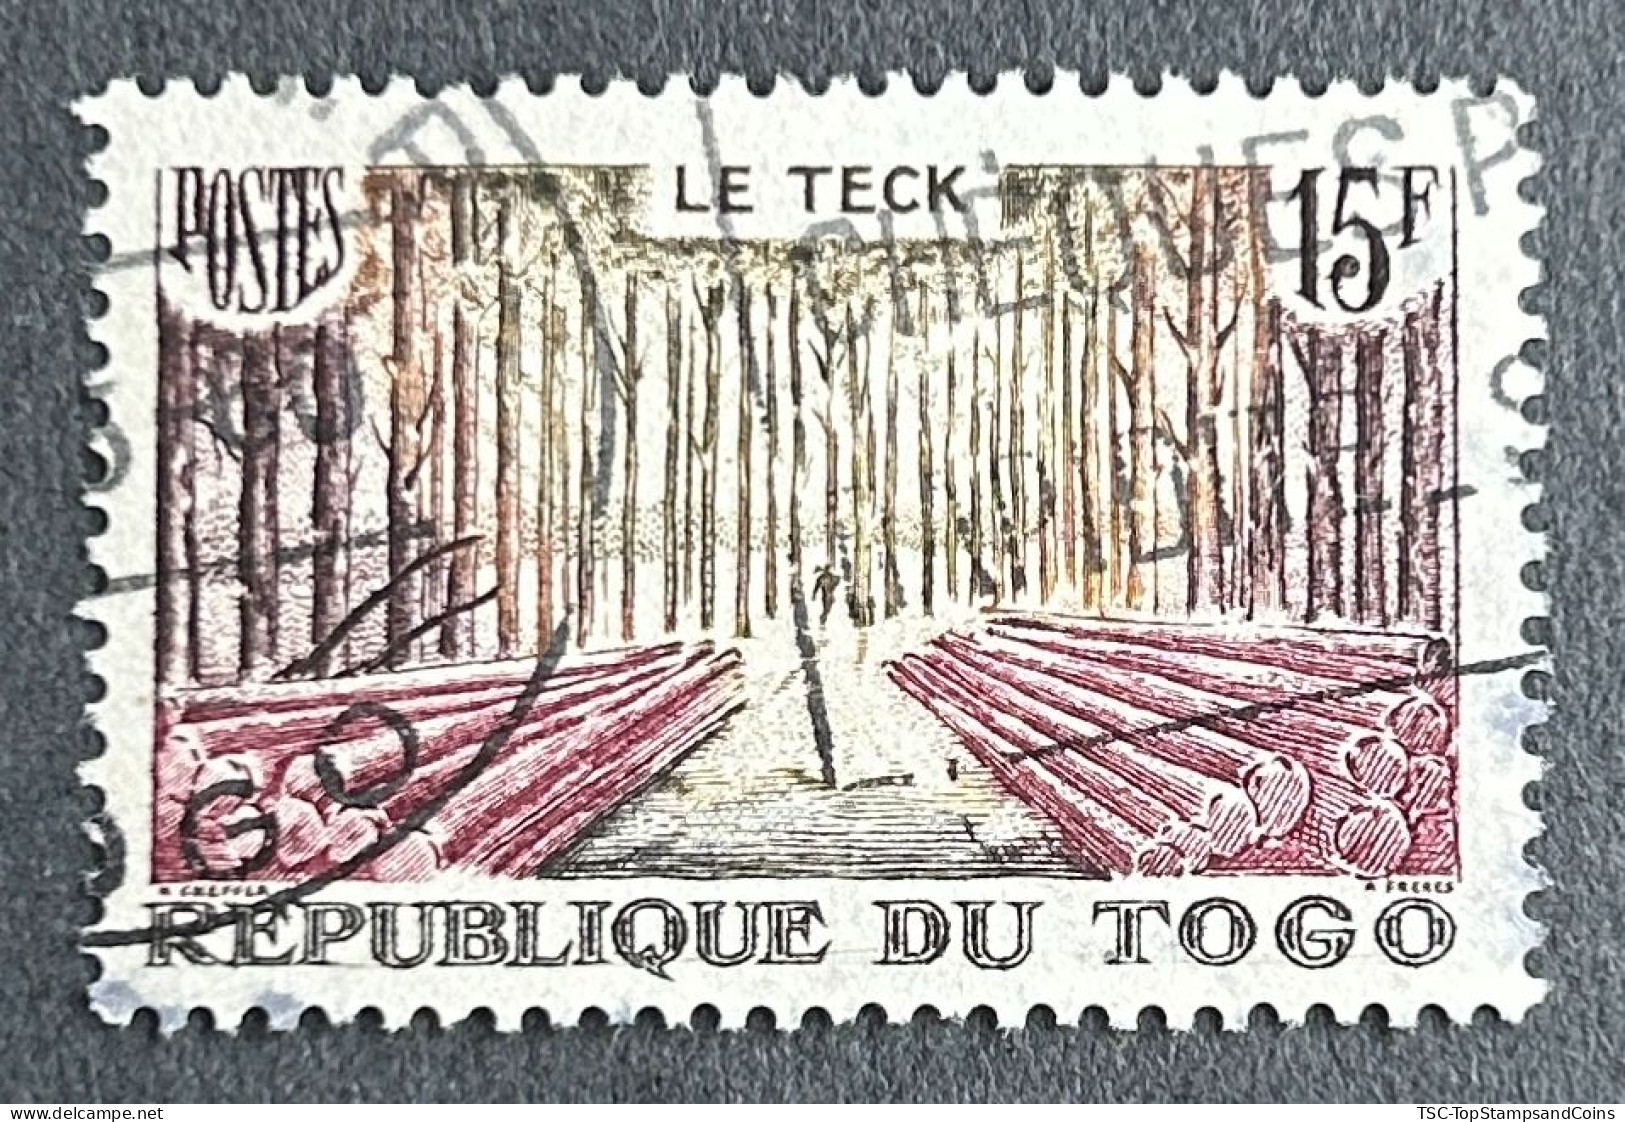 FRTG0288U - Local Motives - Teak Wood - 15 F Used Stamp - Republique Du Togo - 1959 - Oblitérés